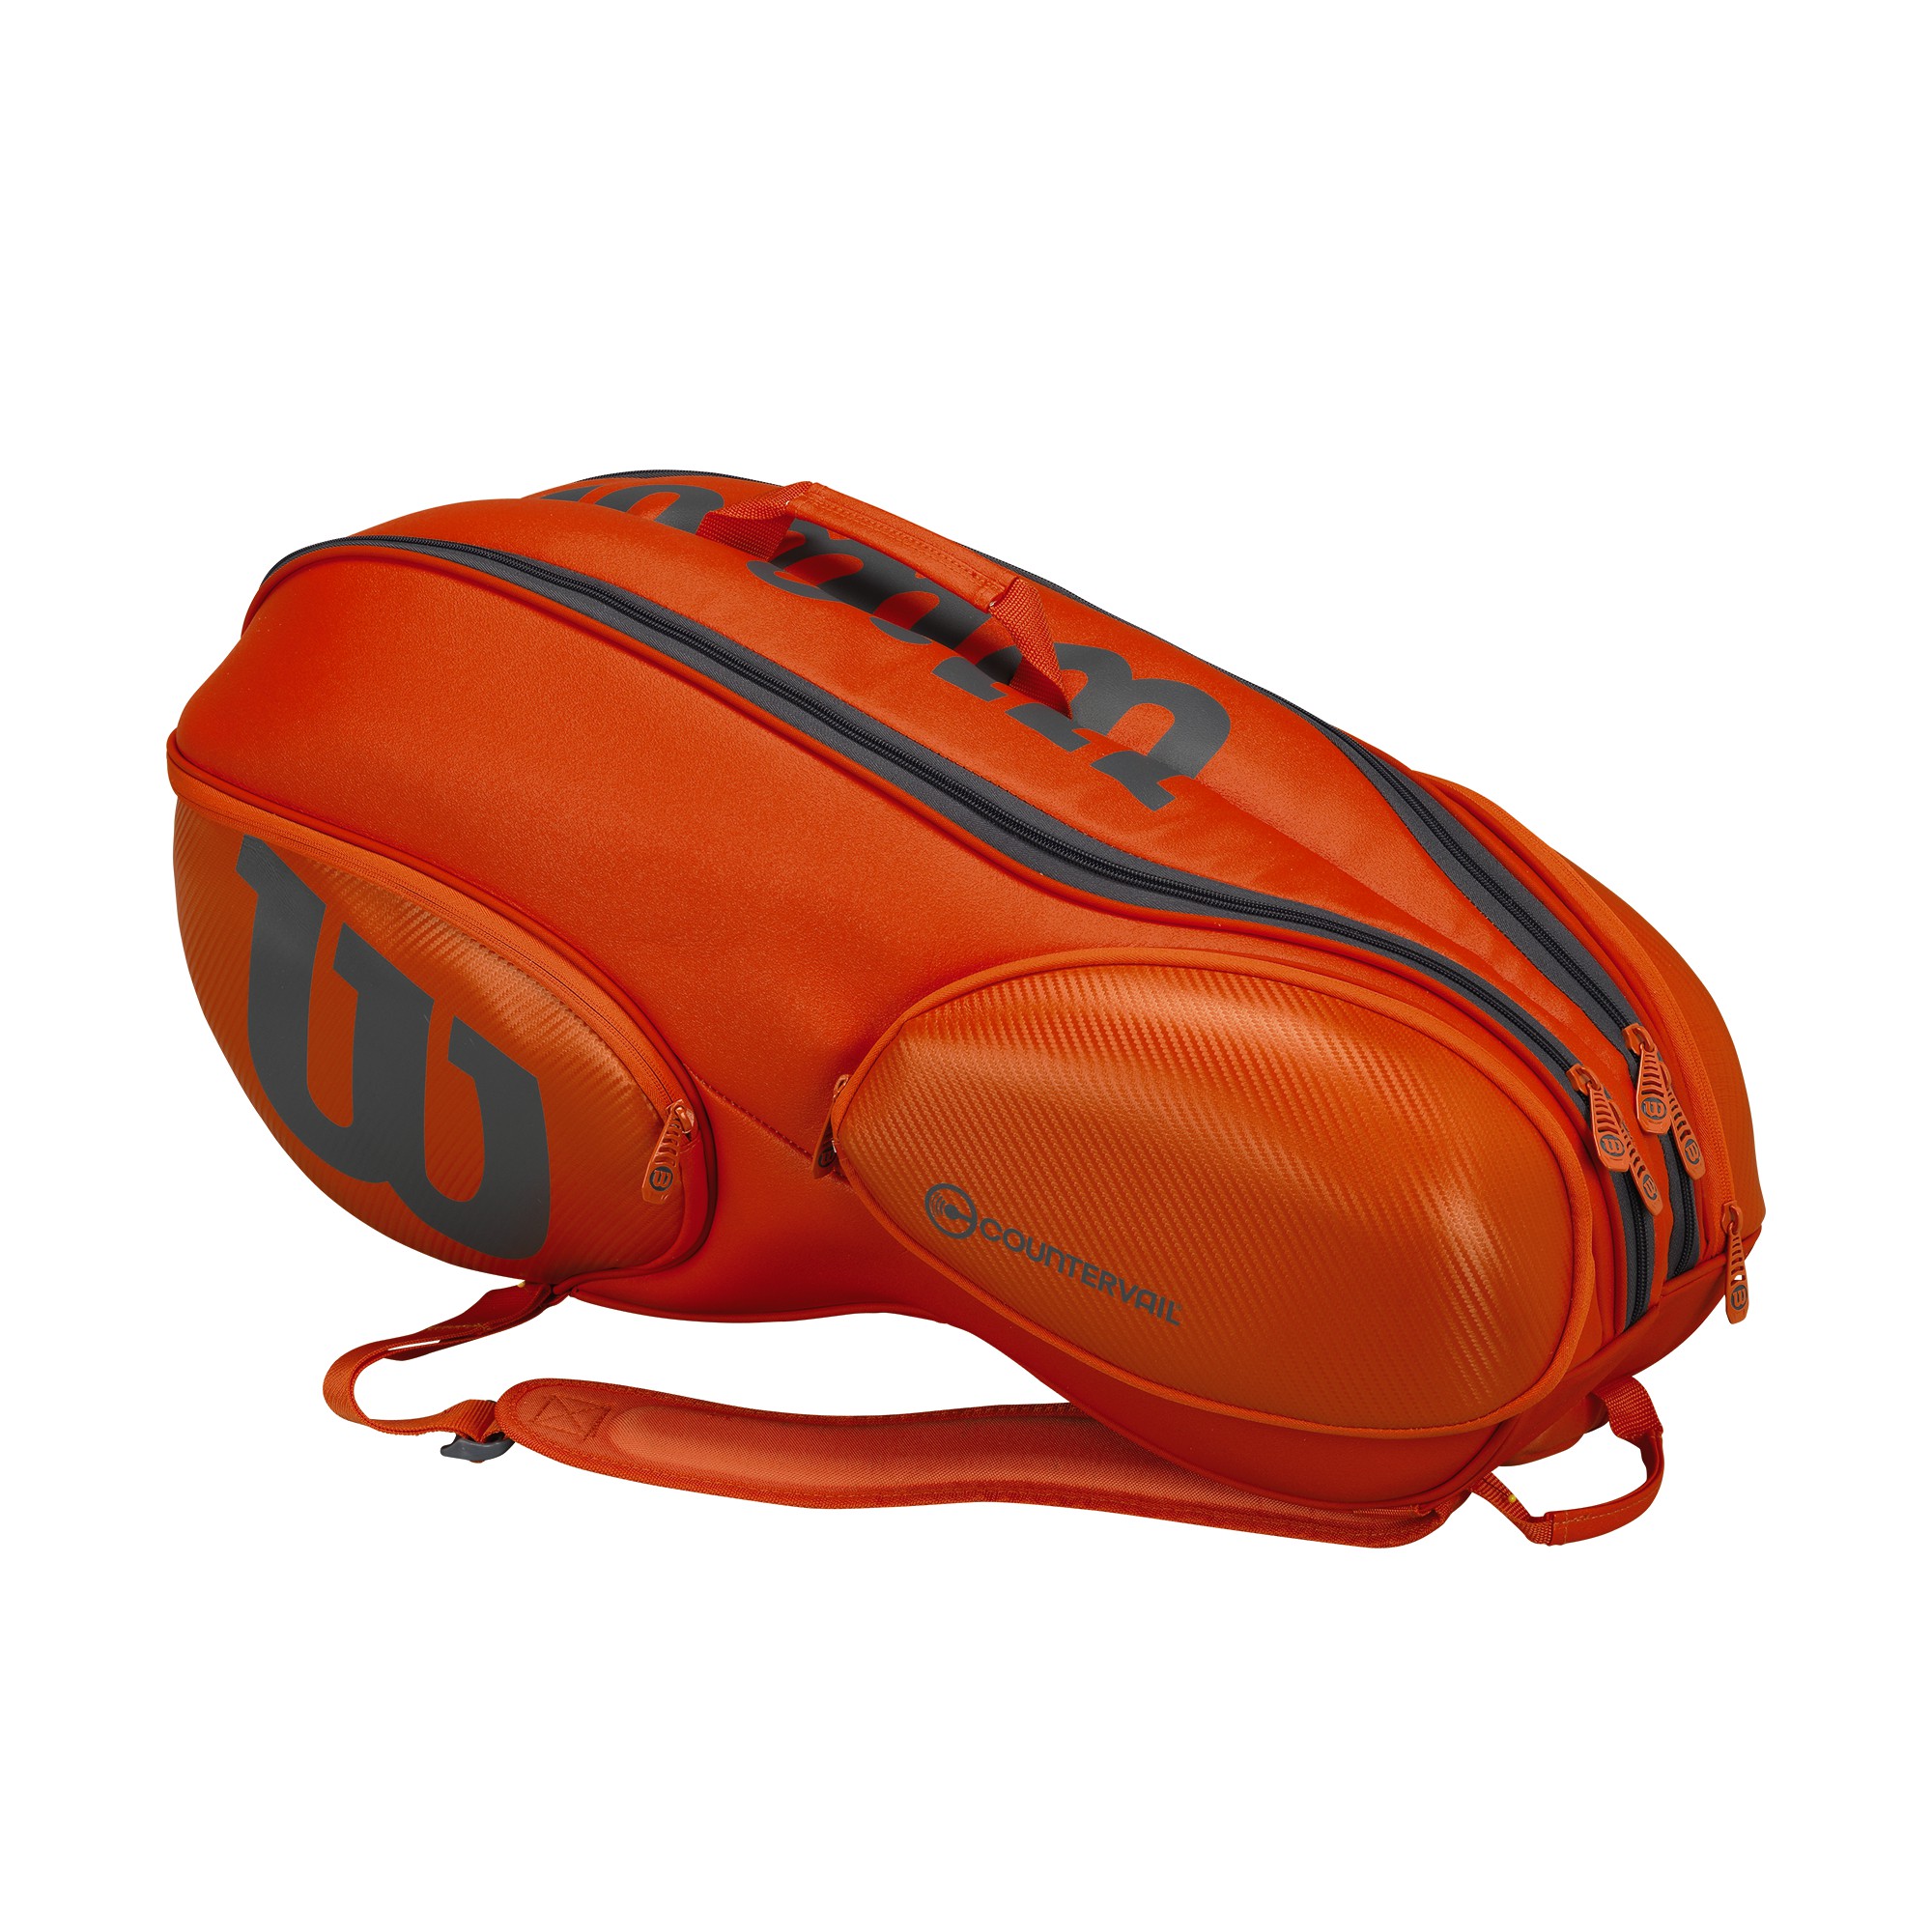 Wilson Vancouver Backpack Tennis Racket Bag WRZ844709 9Pack Grey Orange